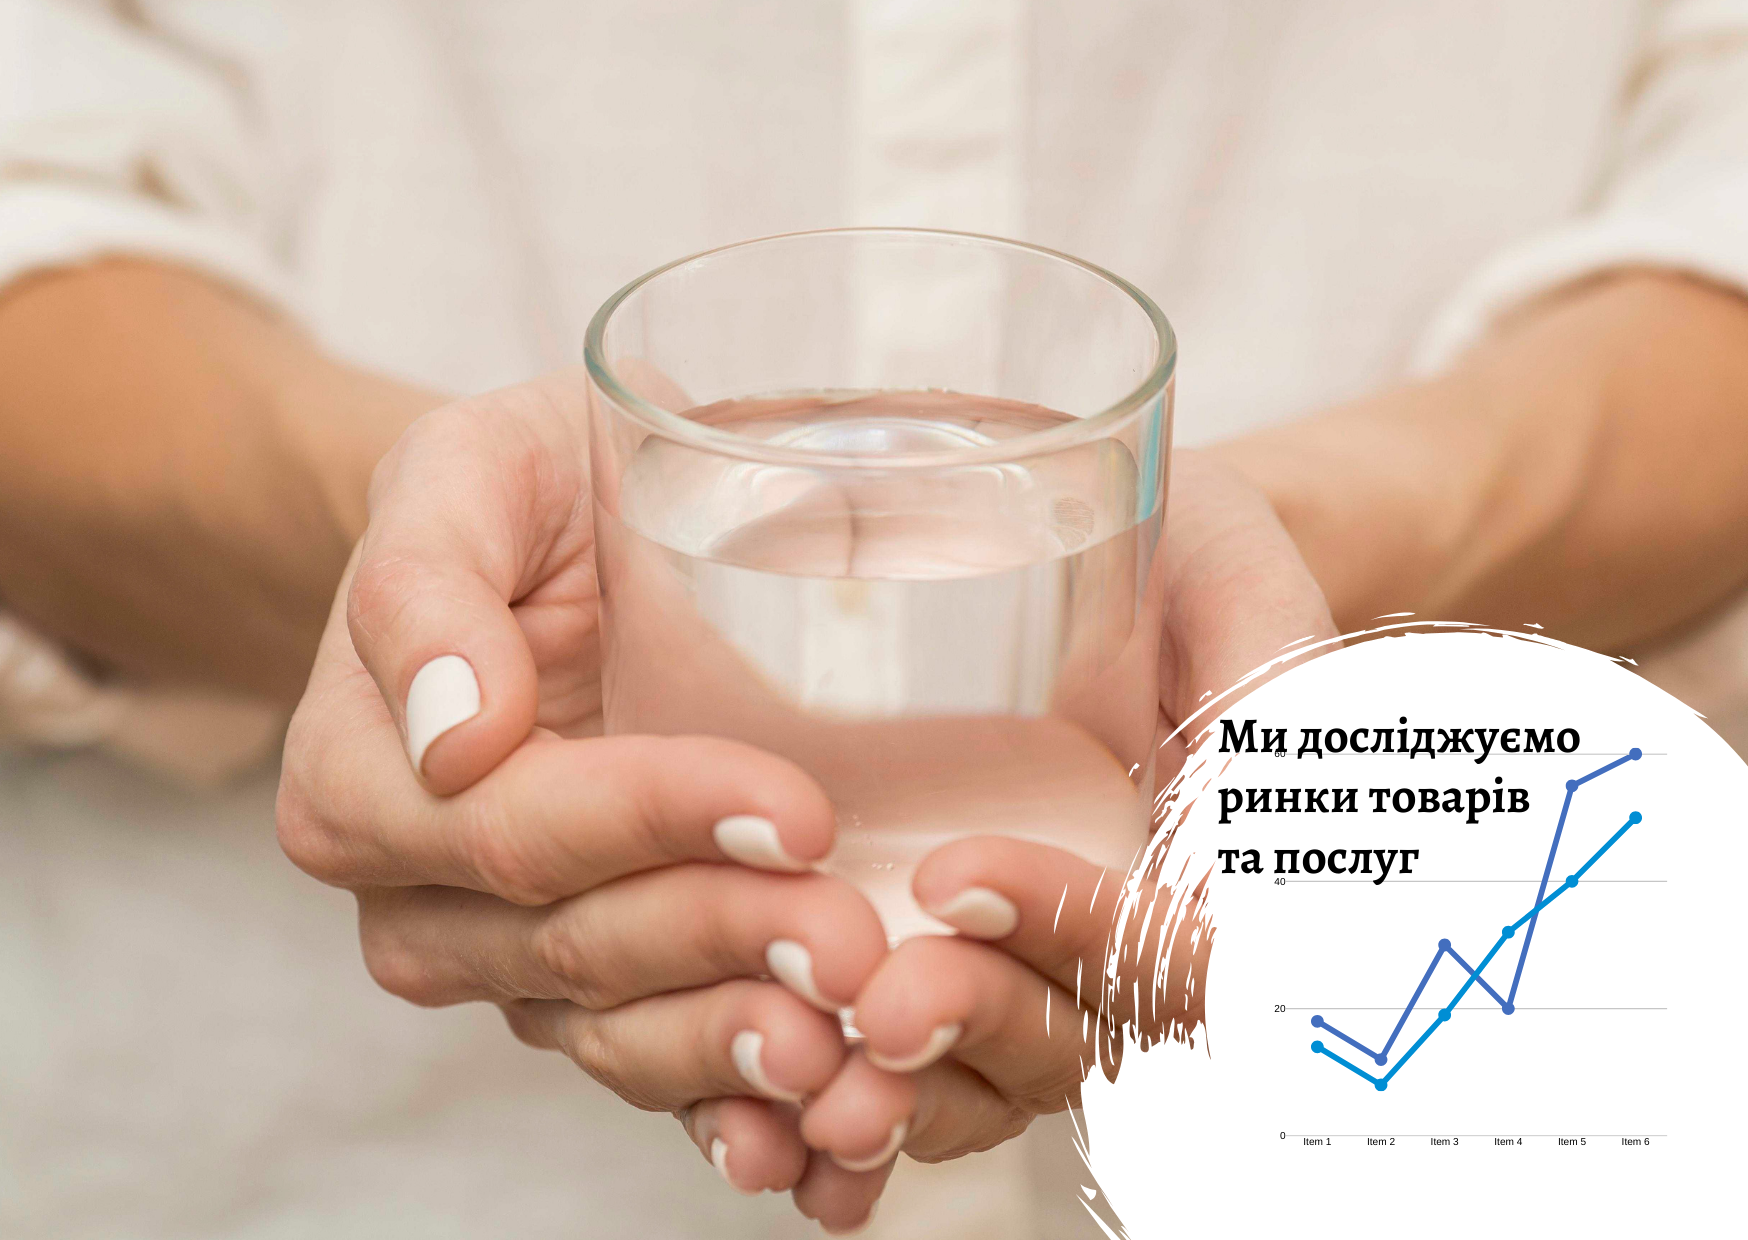 Качество питьевой воды в Кировоградской и Николаевской областях – опросы Pro-Consulting